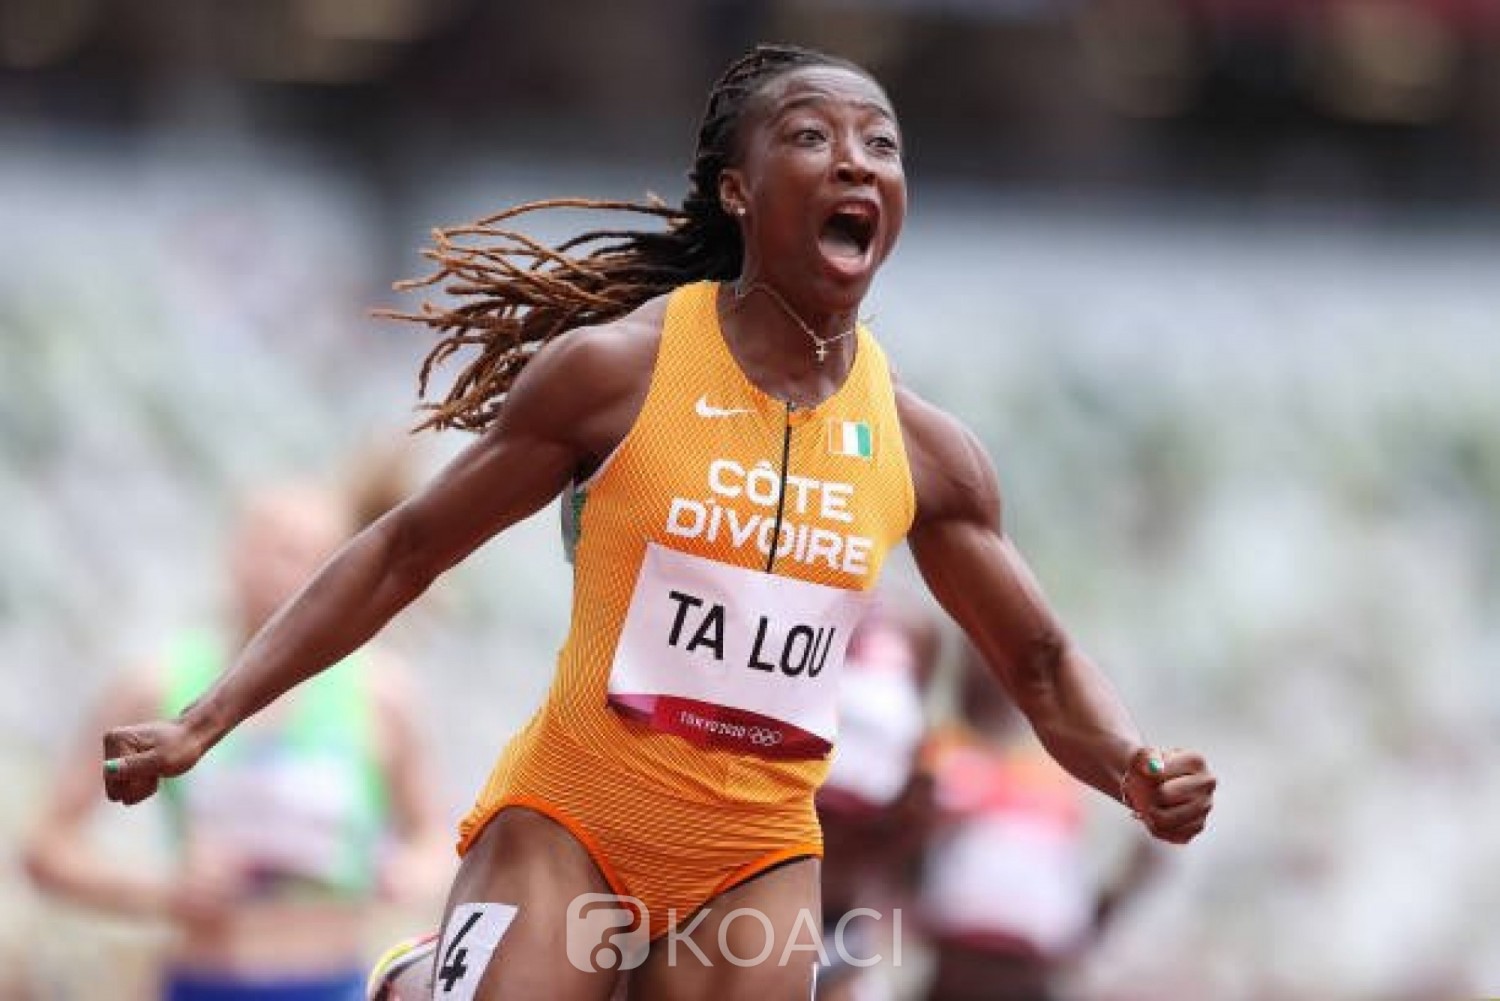 Côte d'Ivoire : Tokyo 2020, 4e au 100M, les espoirs olympiques de Ta Lou, demi-finale du 200M